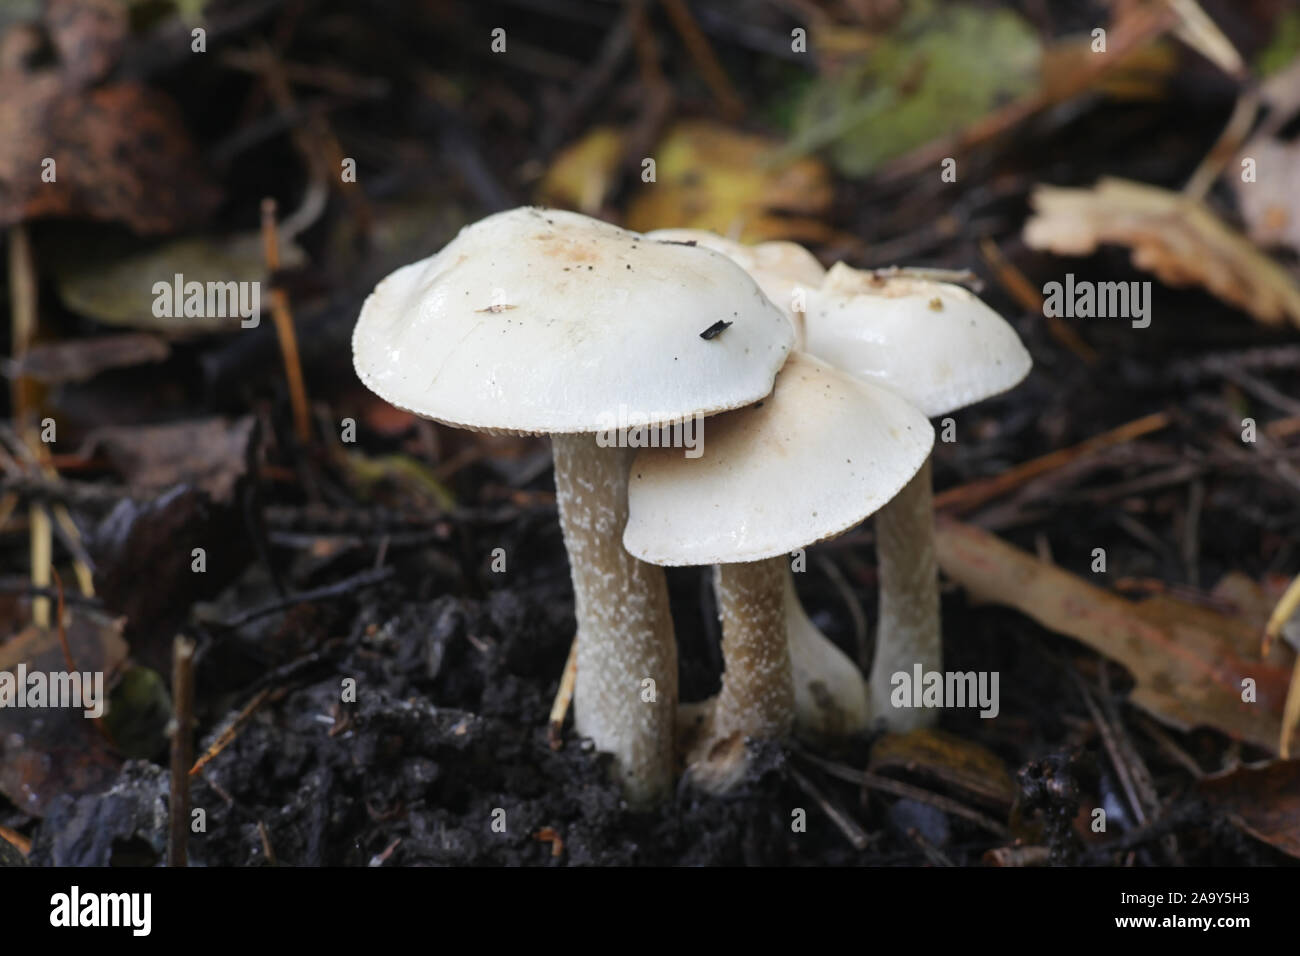 Hebeloma crustuliniforme, wie poisonpie oder Fee kuchen Pilz bekannt Stockfoto